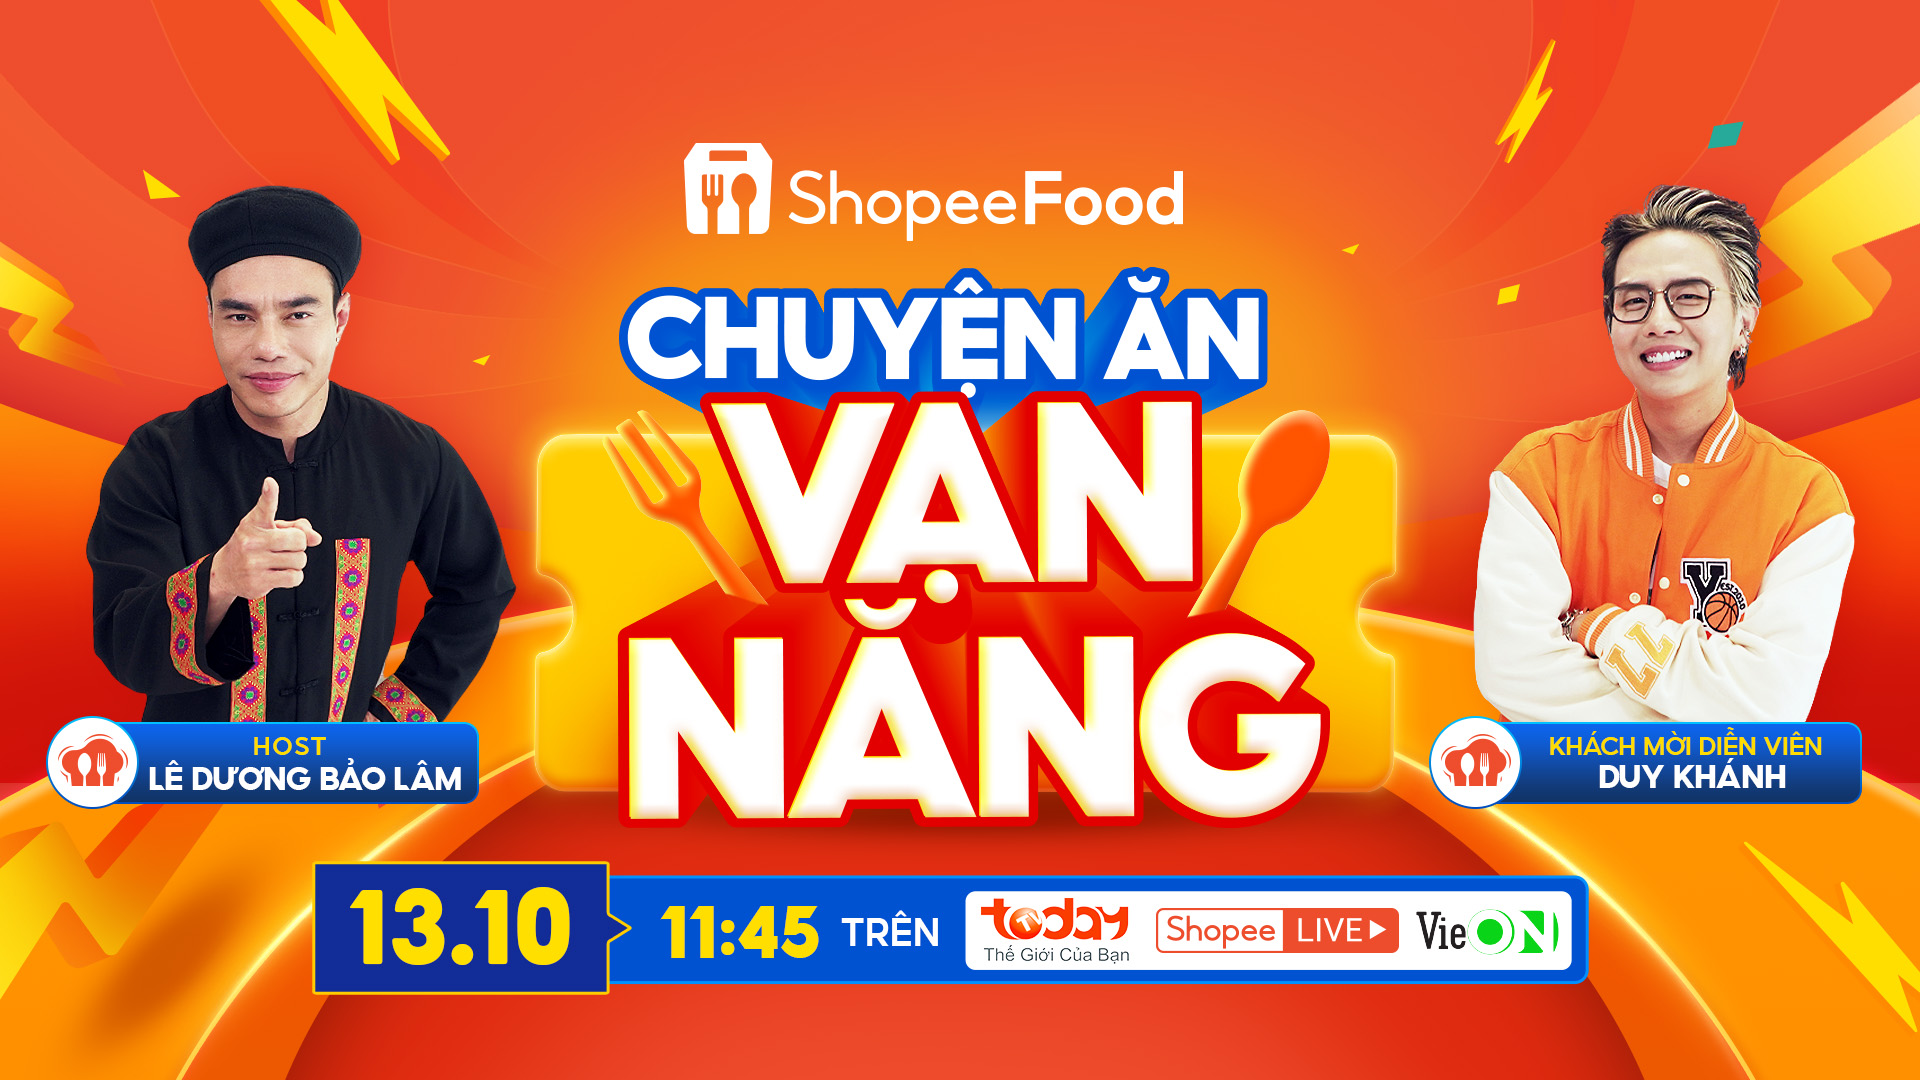 Tập đầu tiên của Chuyện ăn vạn năng với sự xuất hiện của khách mời đặc biệt Duy Khánh sẽ lên sóng TodayTV, ứng dụng giải trí VieOn và Shopee Live vào lúc 11g45 ngày 13/10 - Ảnh: ShopeeFood